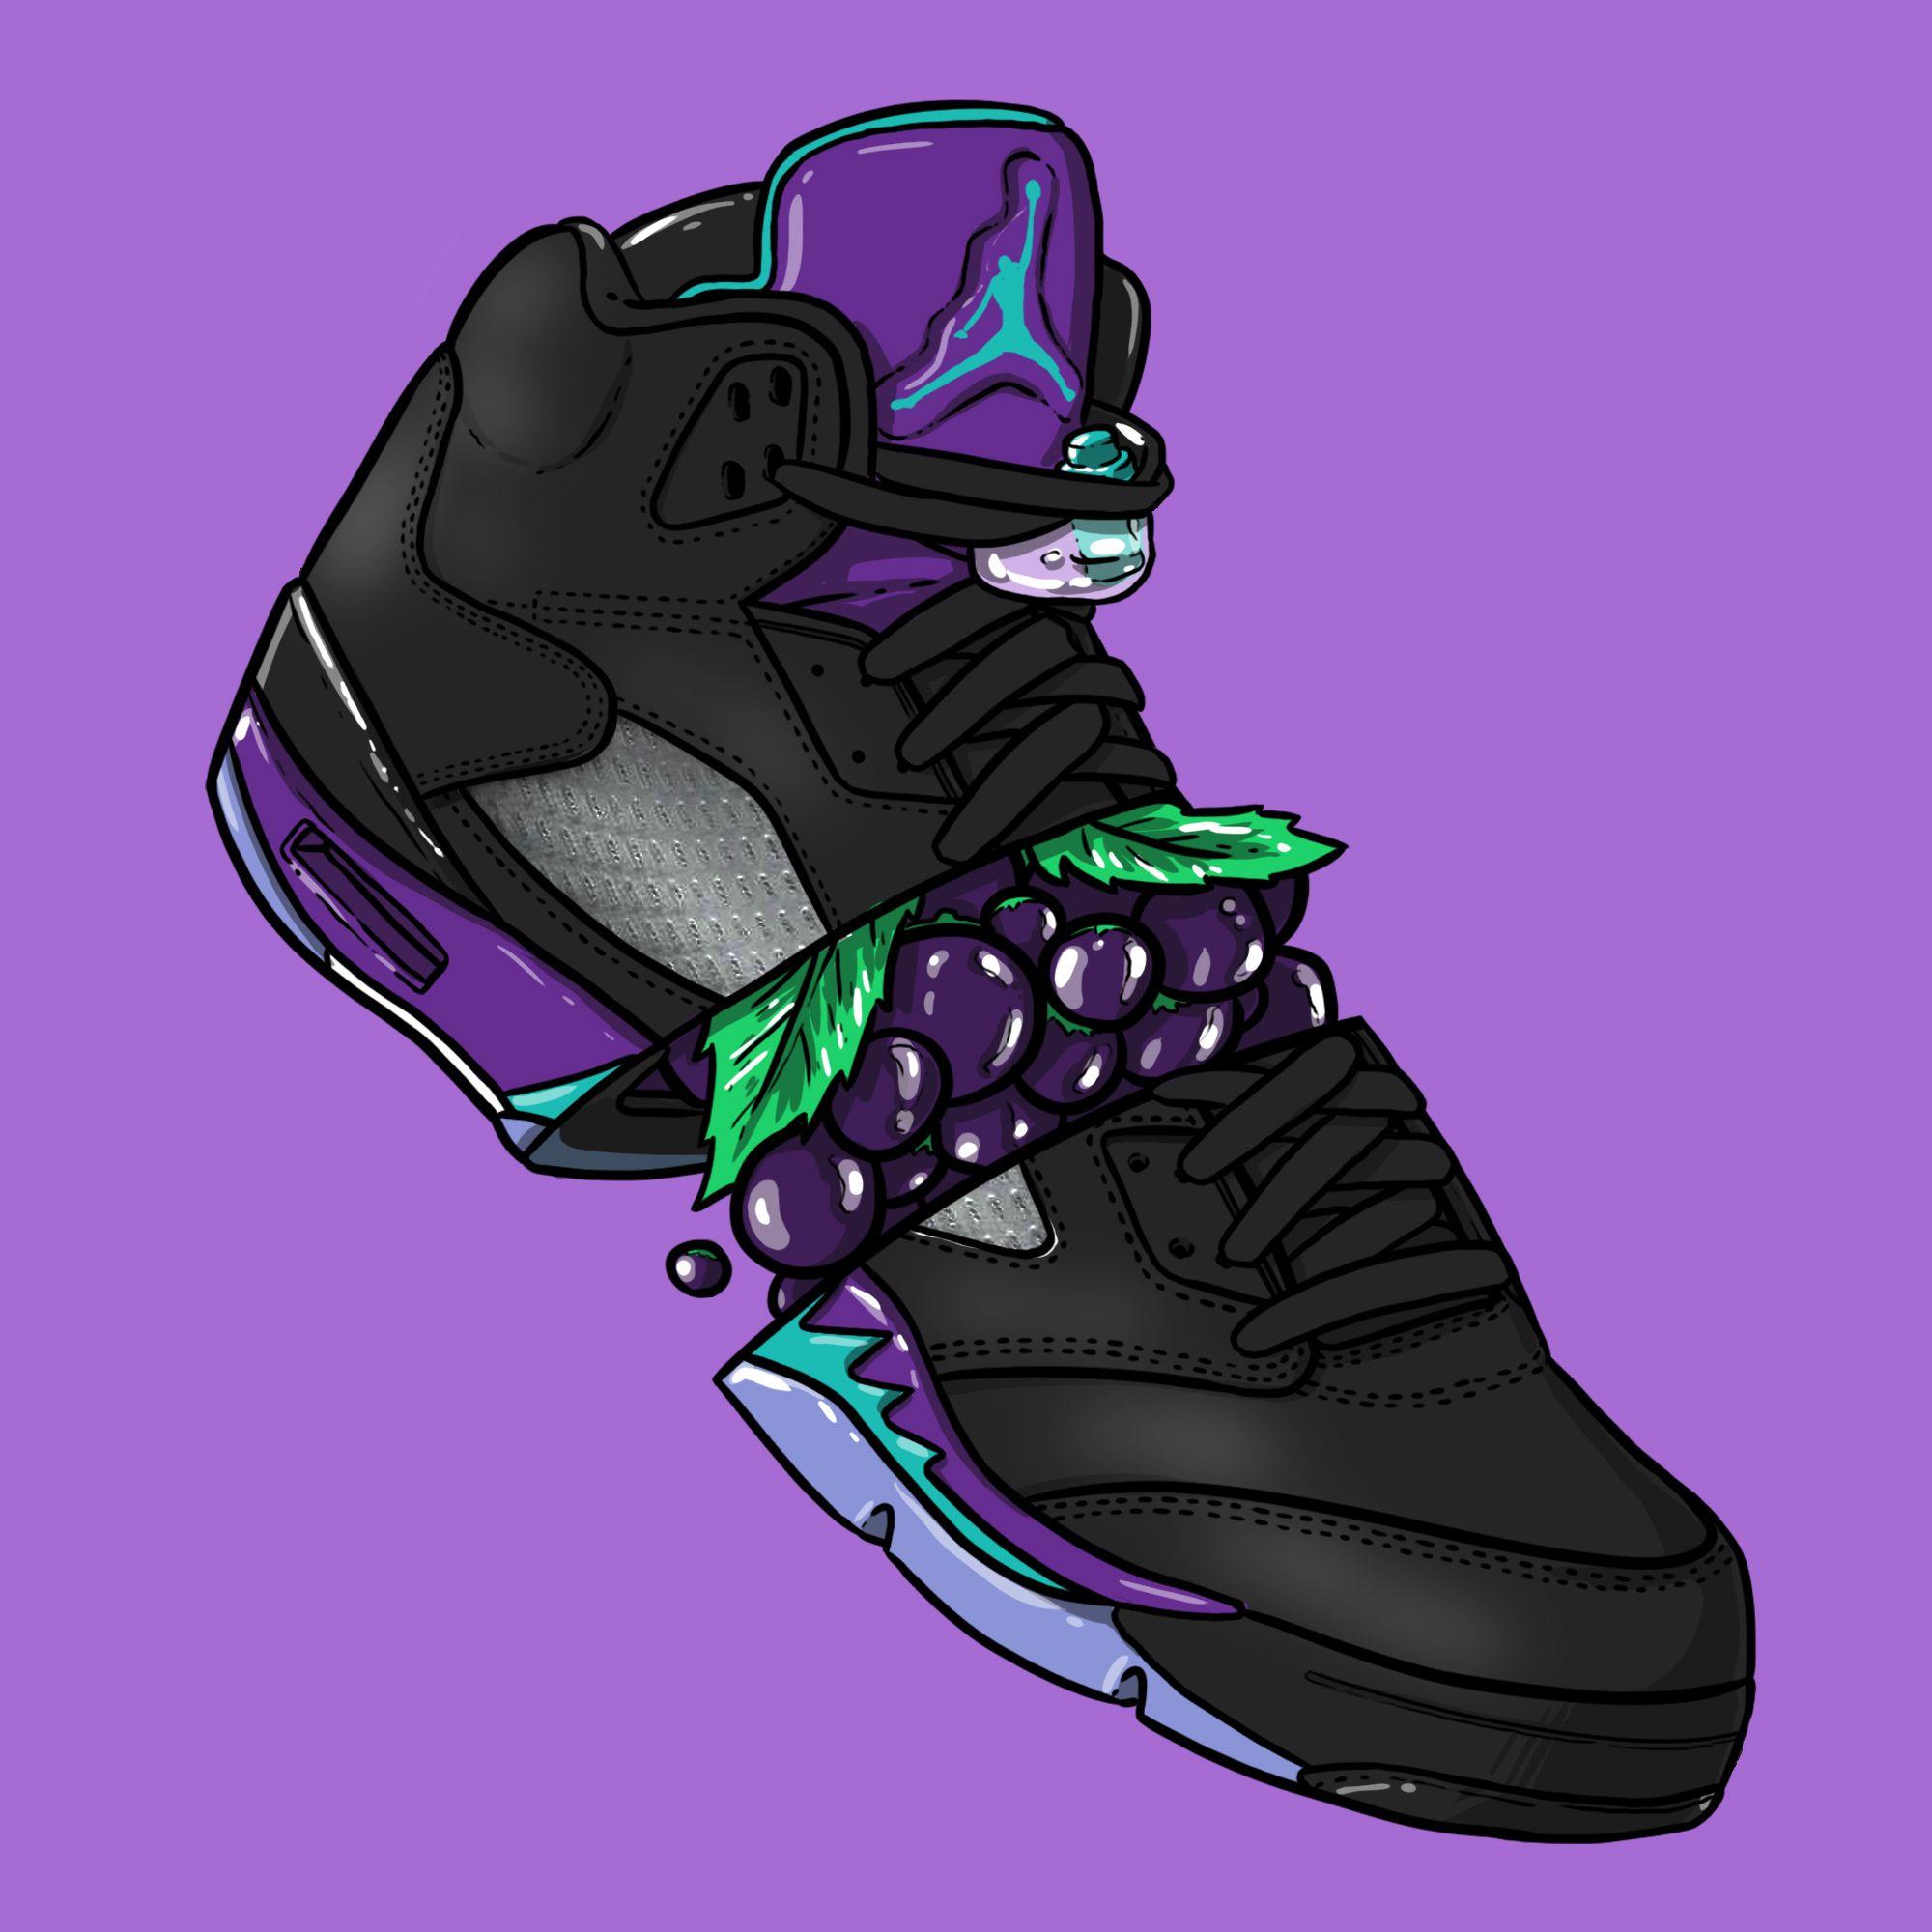 Sneaker Art V Black Grape. Dj лого, Фоны для iphone, Лампасы